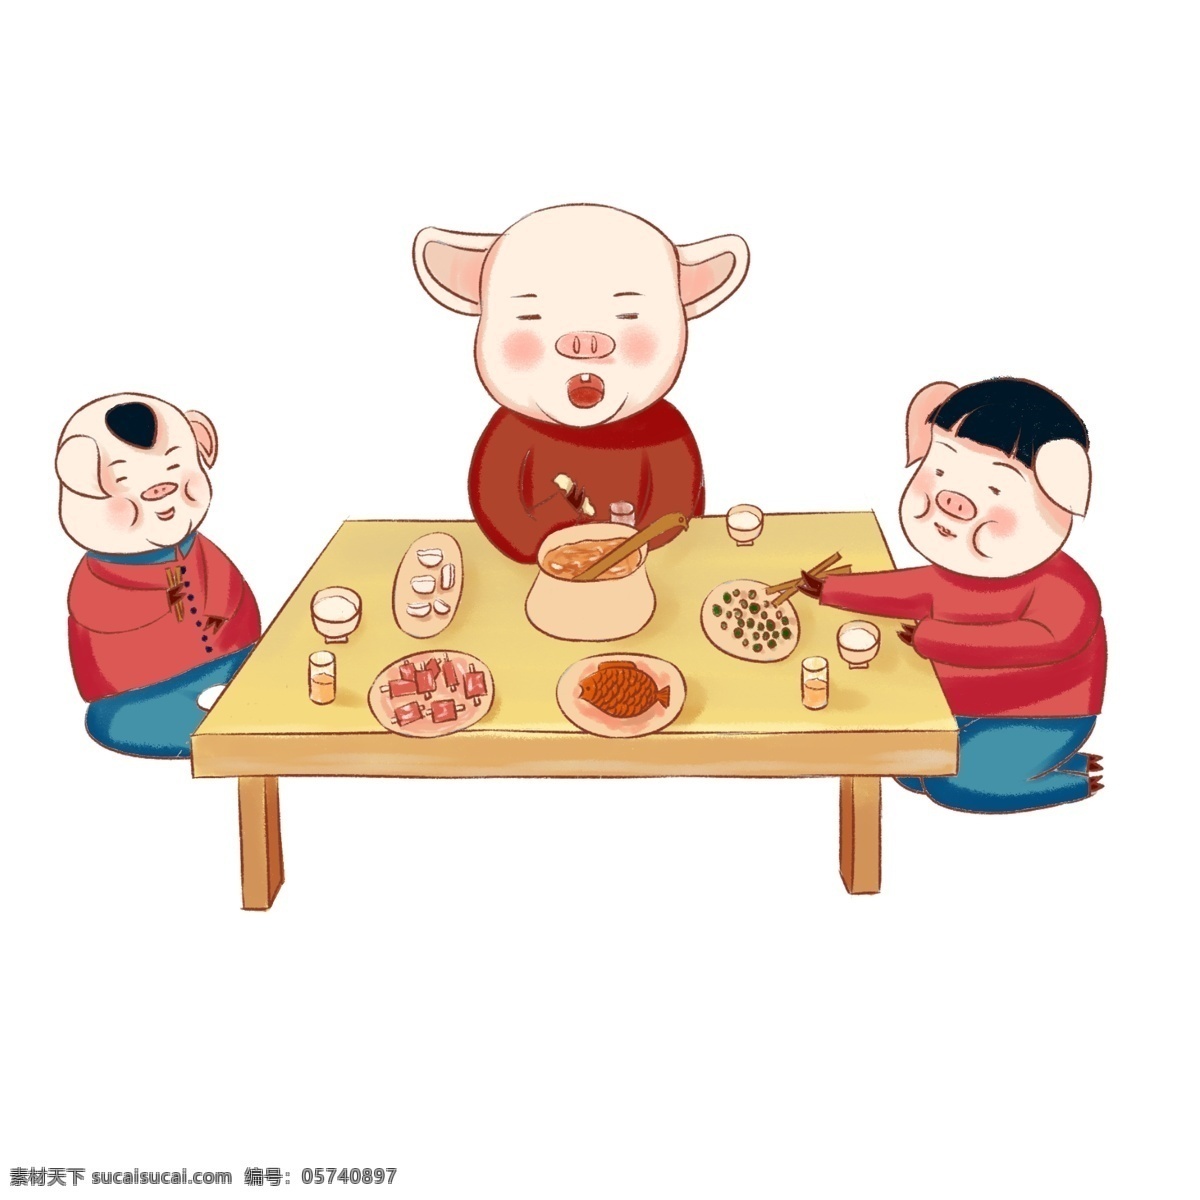 2019 猪 传统 习俗 一家 三口 吃 年夜饭 猪年 卡通手绘 一家三口 吃年夜饭 传统习俗 过春节 猪爸爸 猪妈妈 猪宝宝 一家吃年夜饭